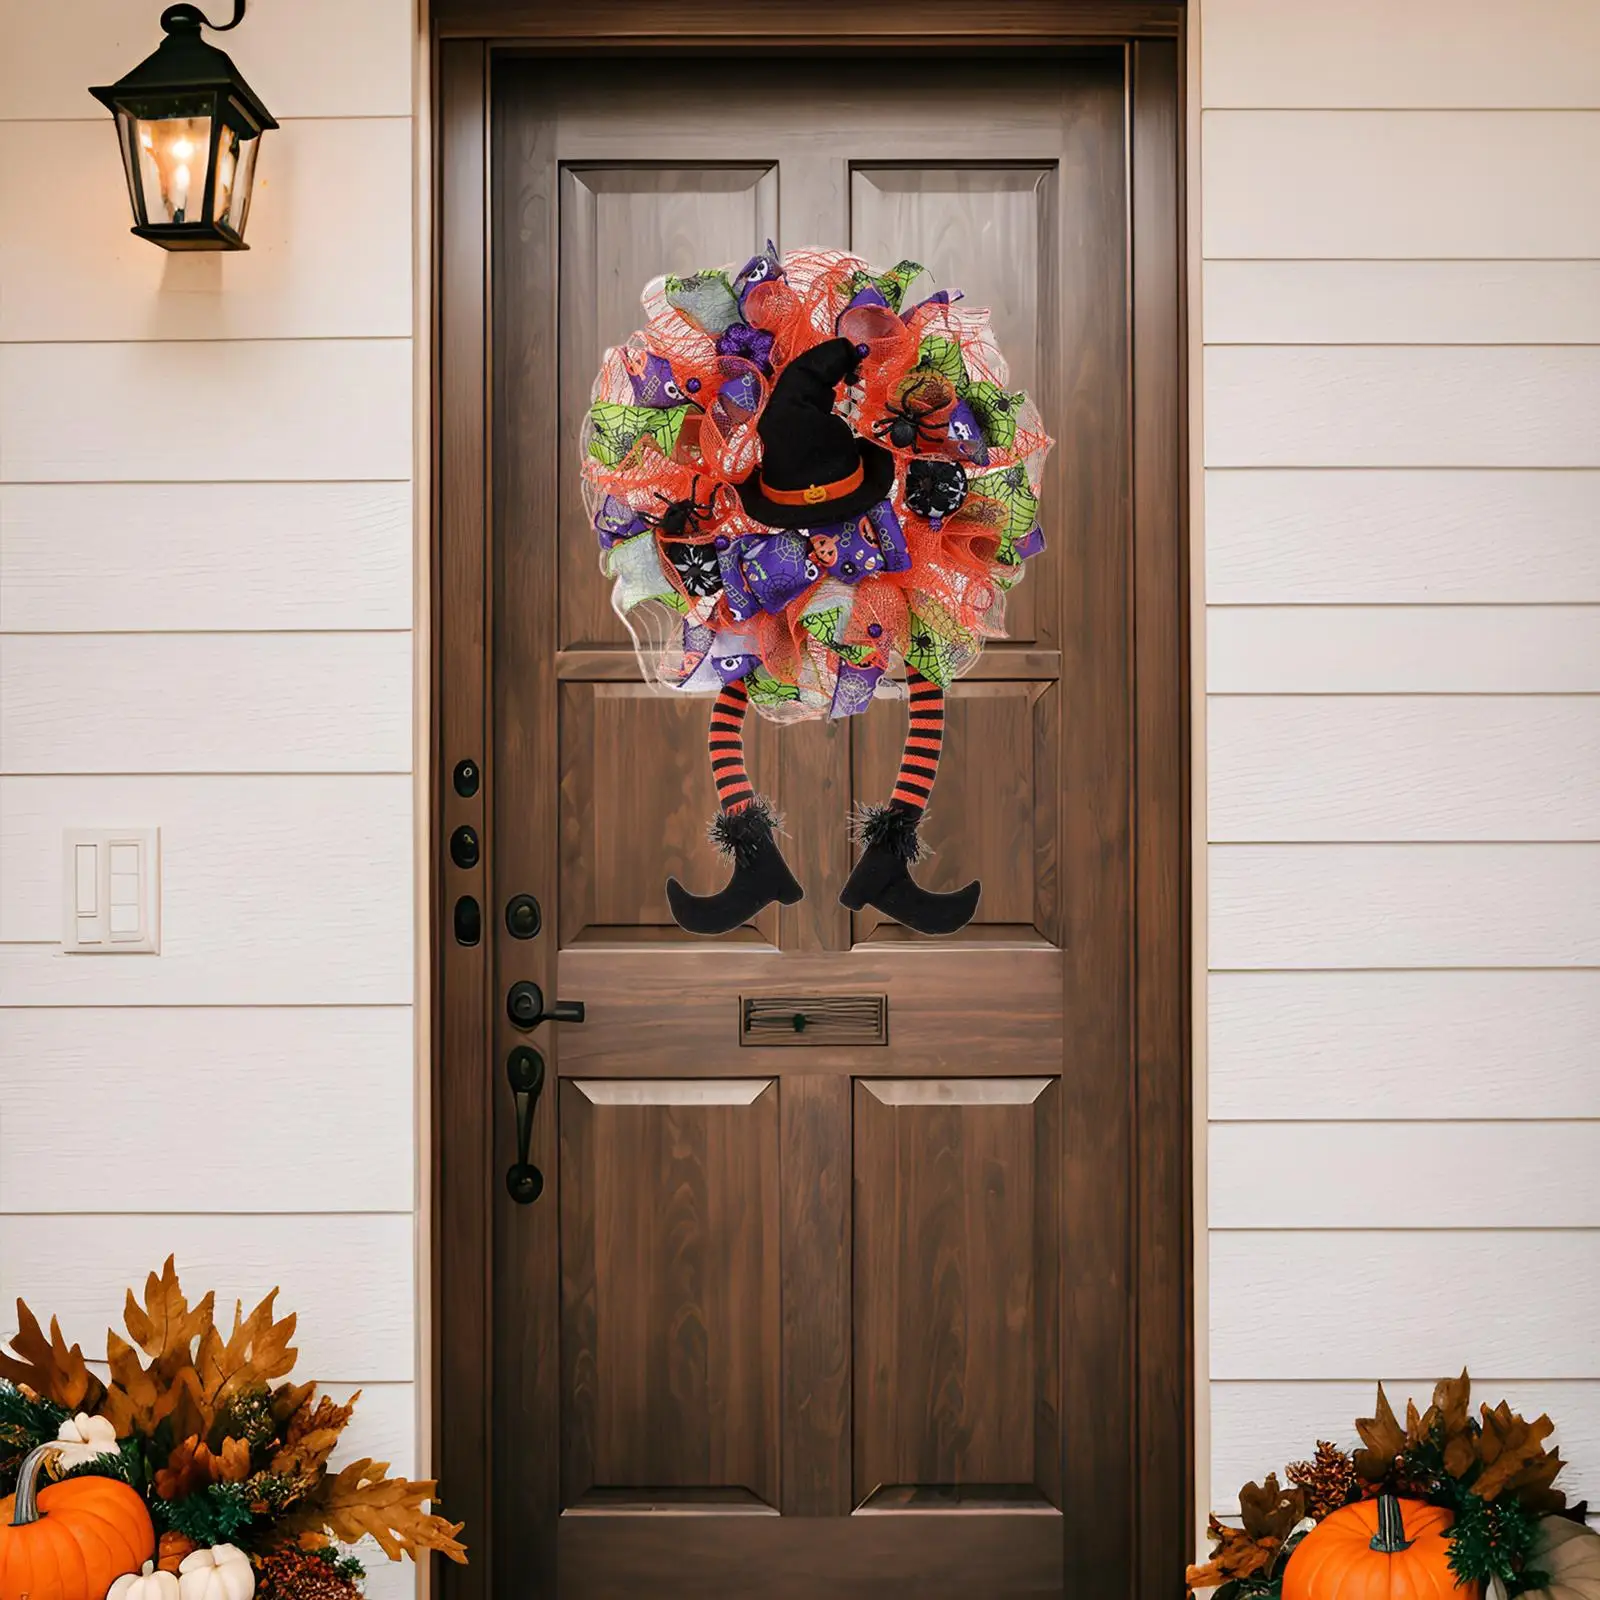 

Венок на Хэллоуин для входной двери с колпачкой ведьмы и ножками 60 см x 40 см Гирлянда для крыльца Хэллоуин для дома и улицы